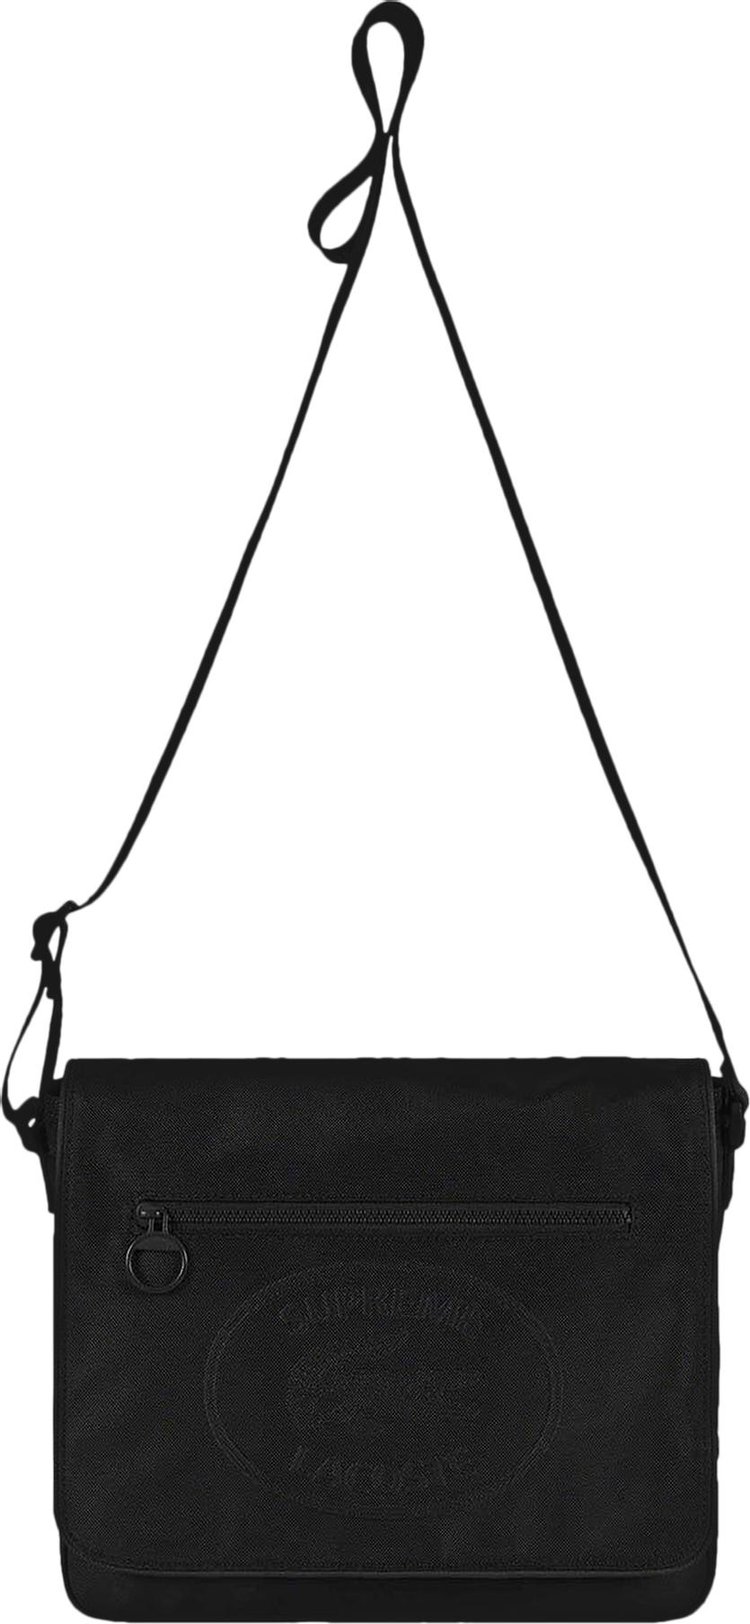 Lacoste leather black Messenger Bag